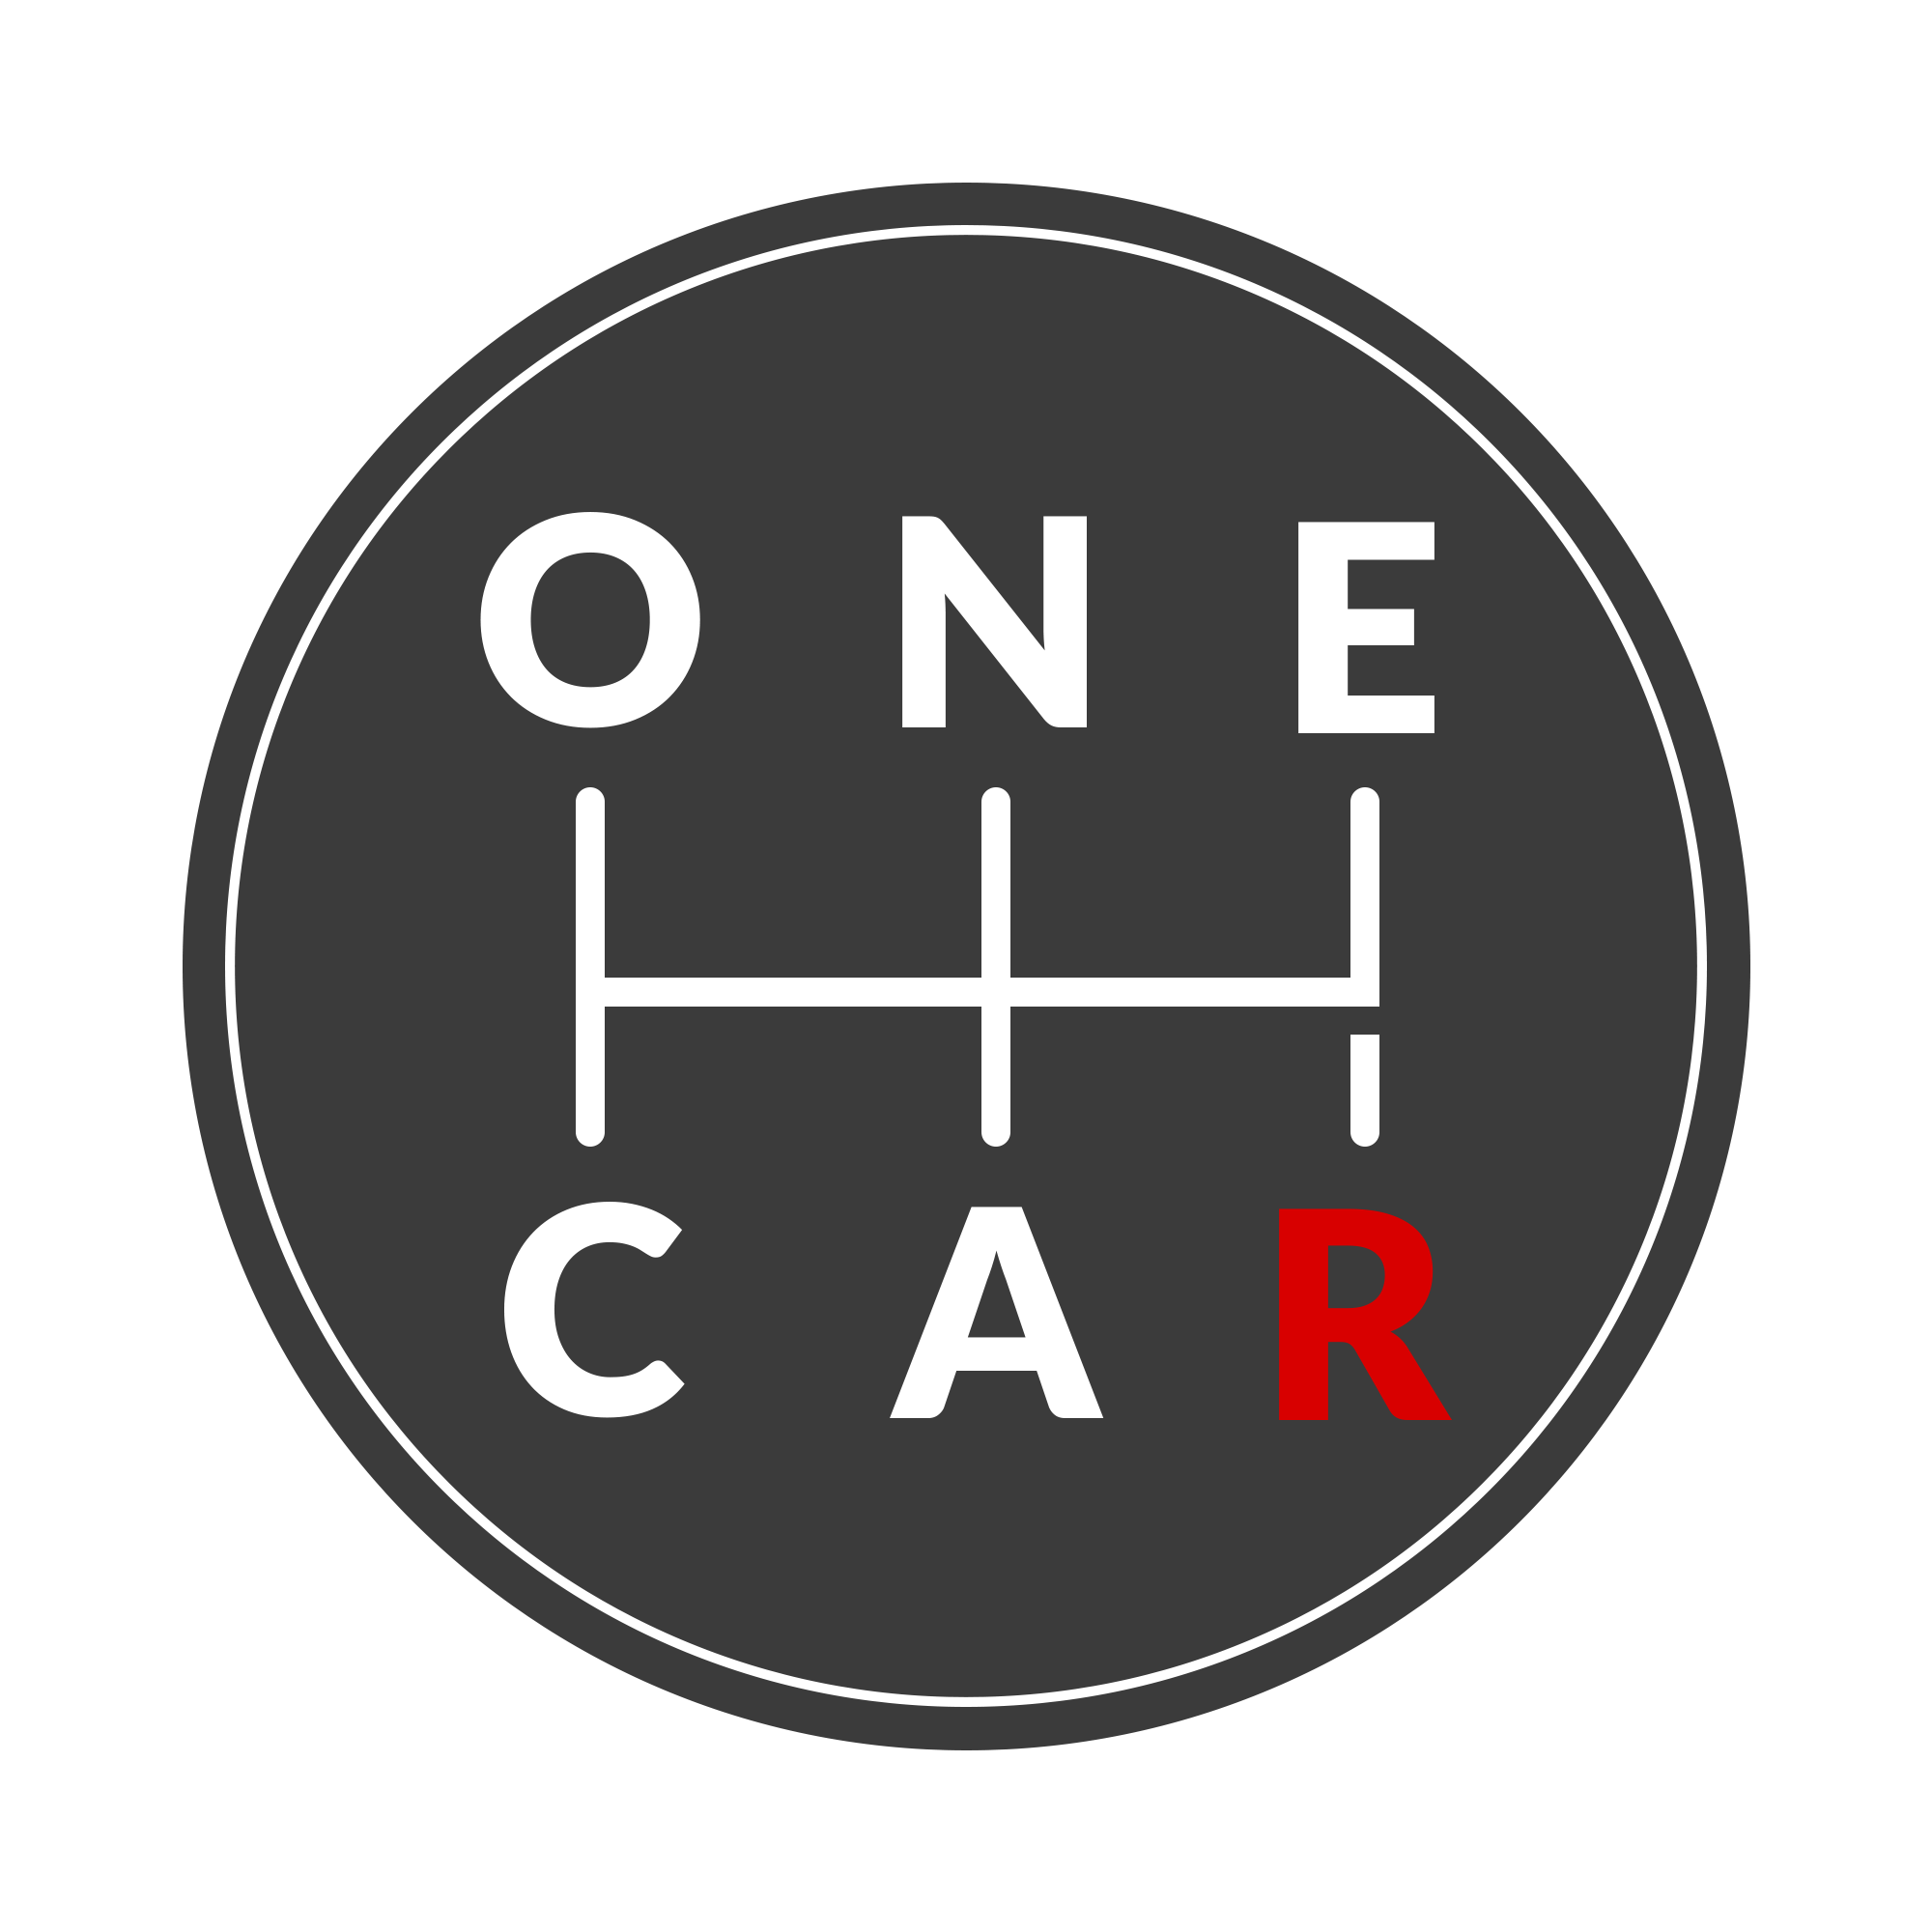 OneCar - sprzedaż aut poleasingowych